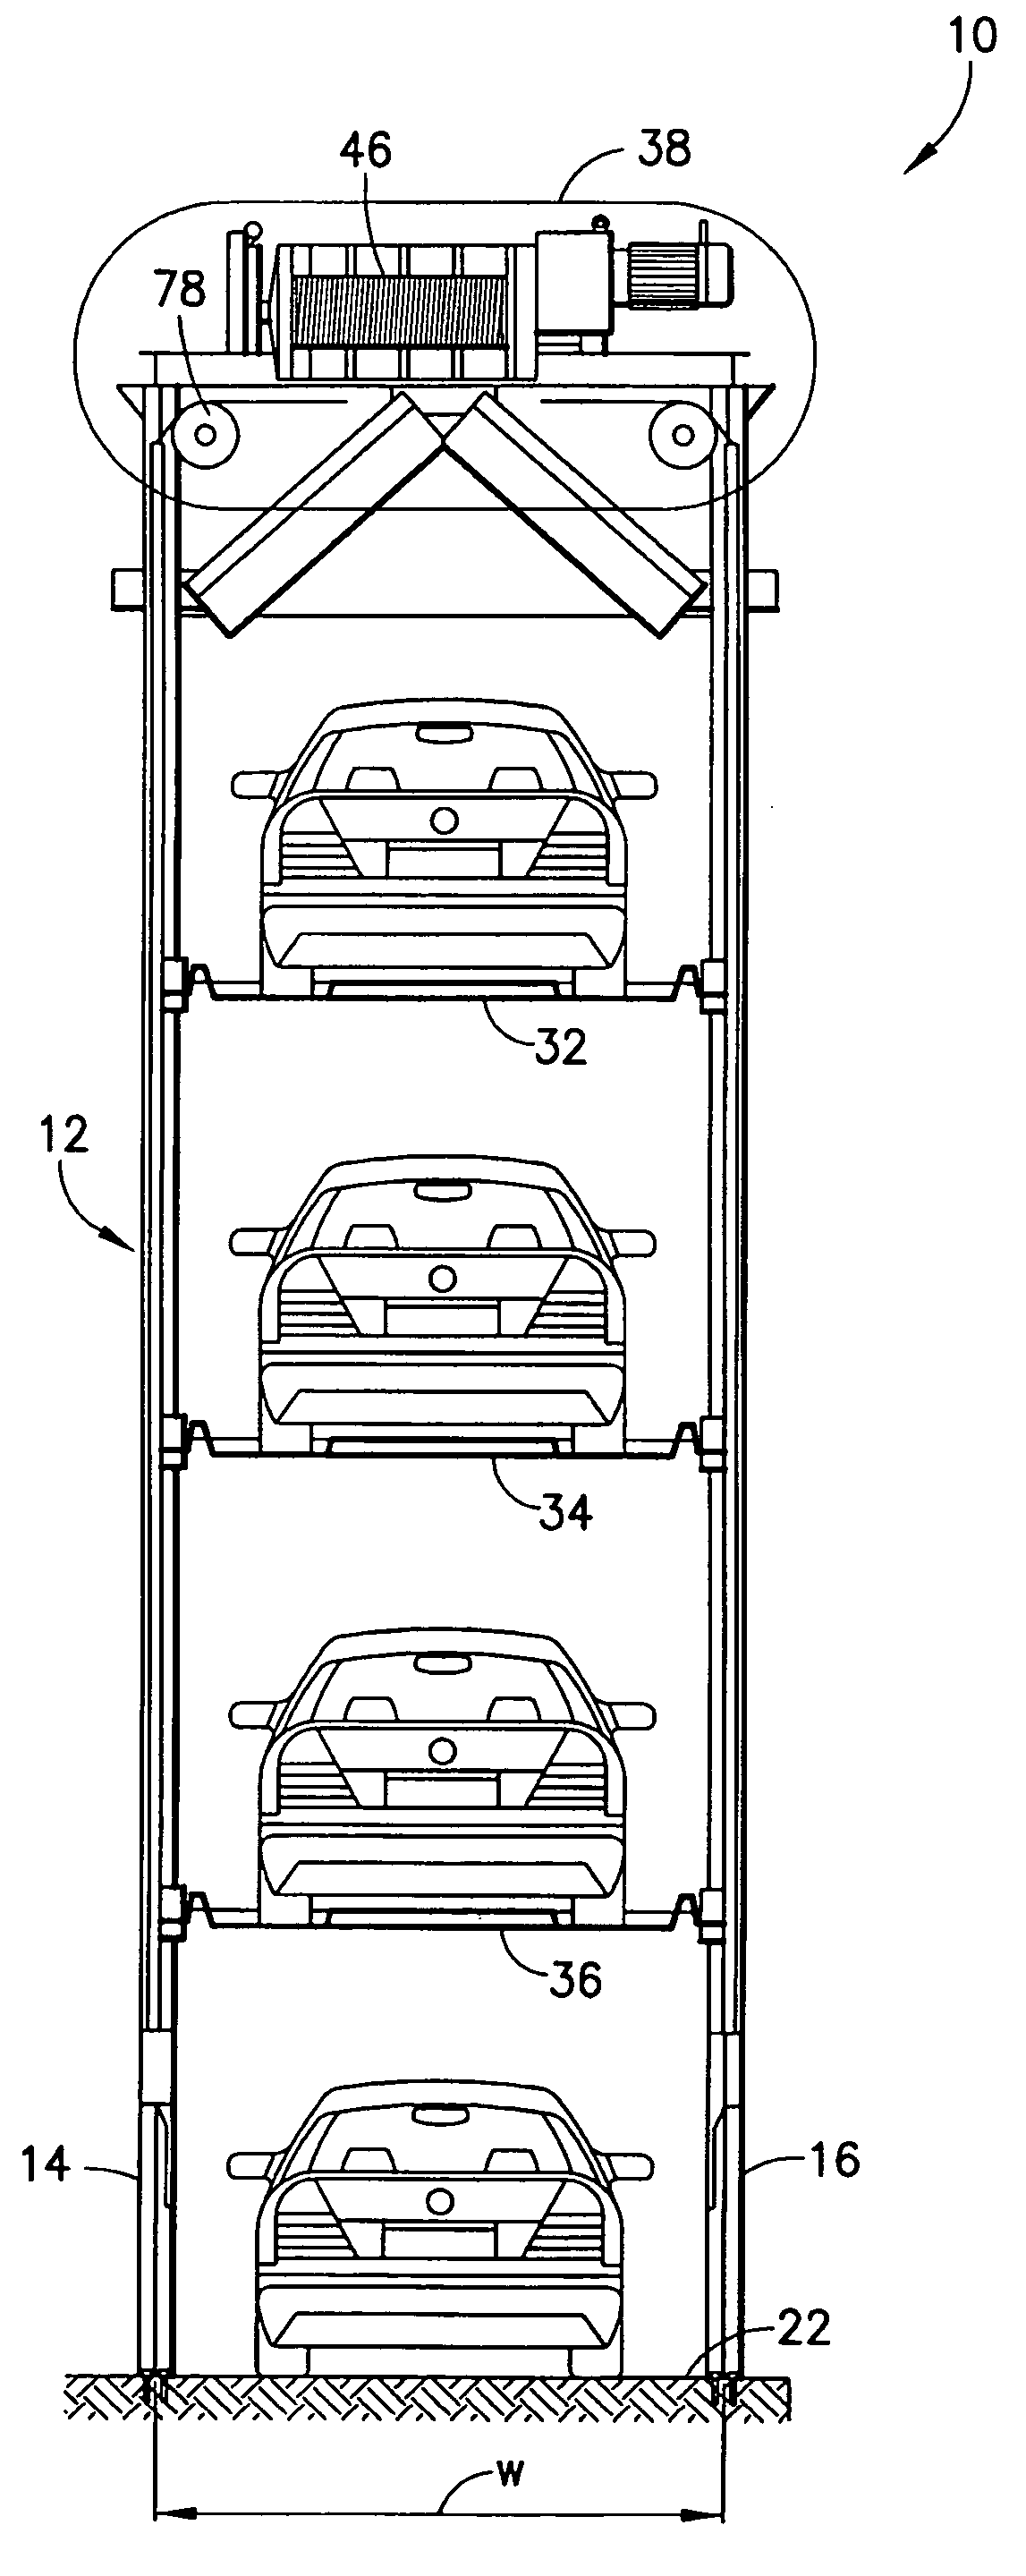 Quadruple vehicle parking system